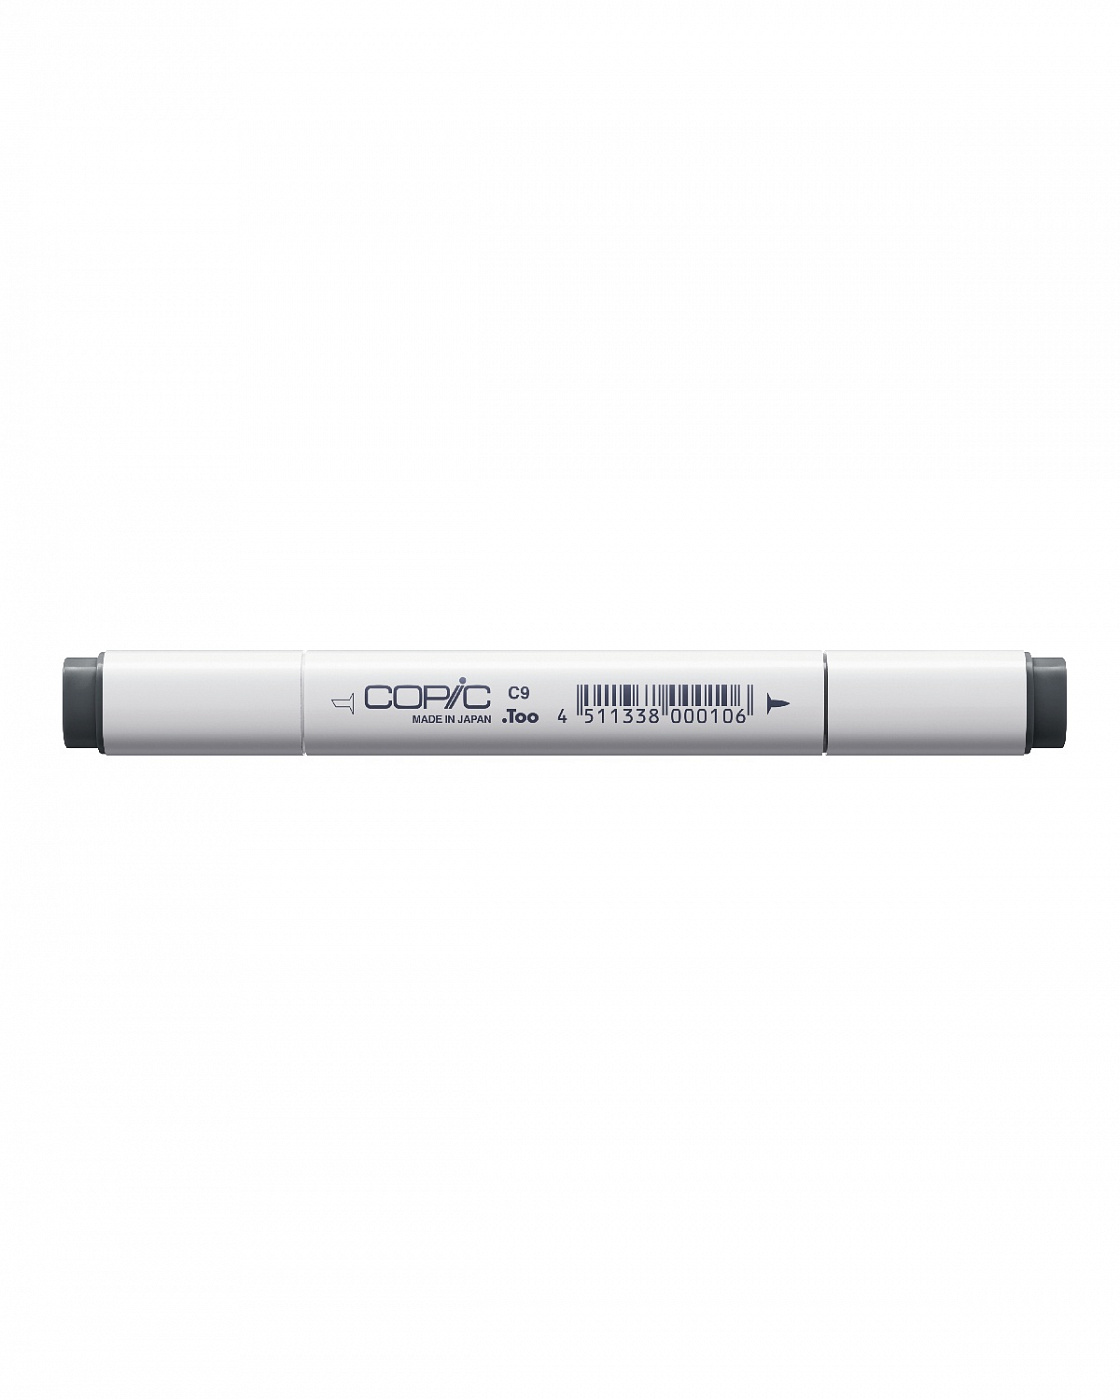 Маркер COPIC C9 (холодный серый, cool gray) (оттенок №9) маркер copic w4 теплый серый warm gray оттенок 4